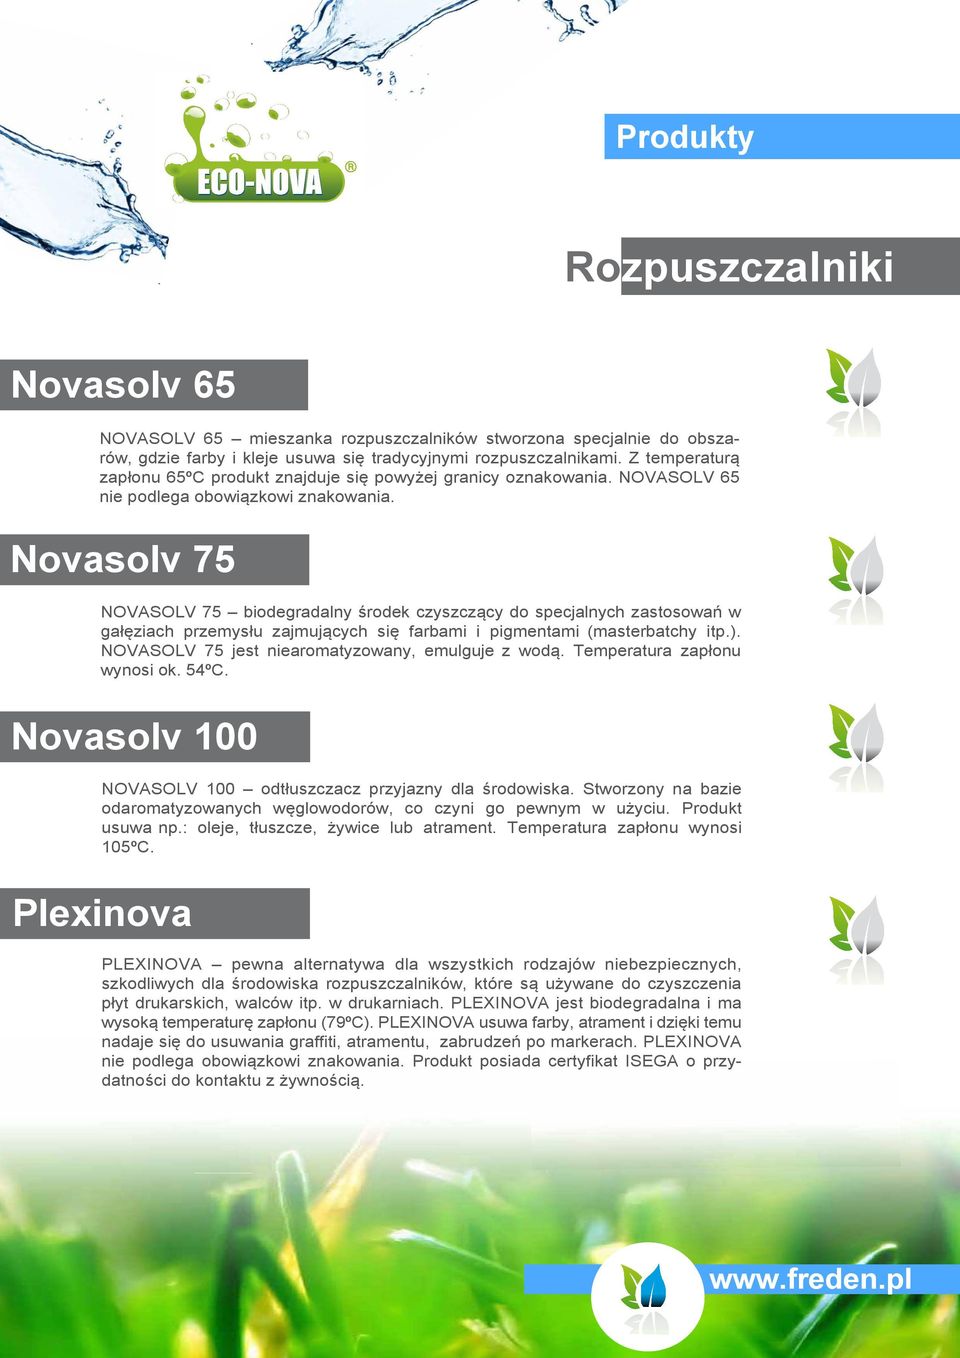 Novasolv 75 NOVASOLV 75 biodegradalny środek czyszczący do specjalnych zastosowań w gałęziach przemysłu zajmujących się farbami i pigmentami (masterbatchy itp.).